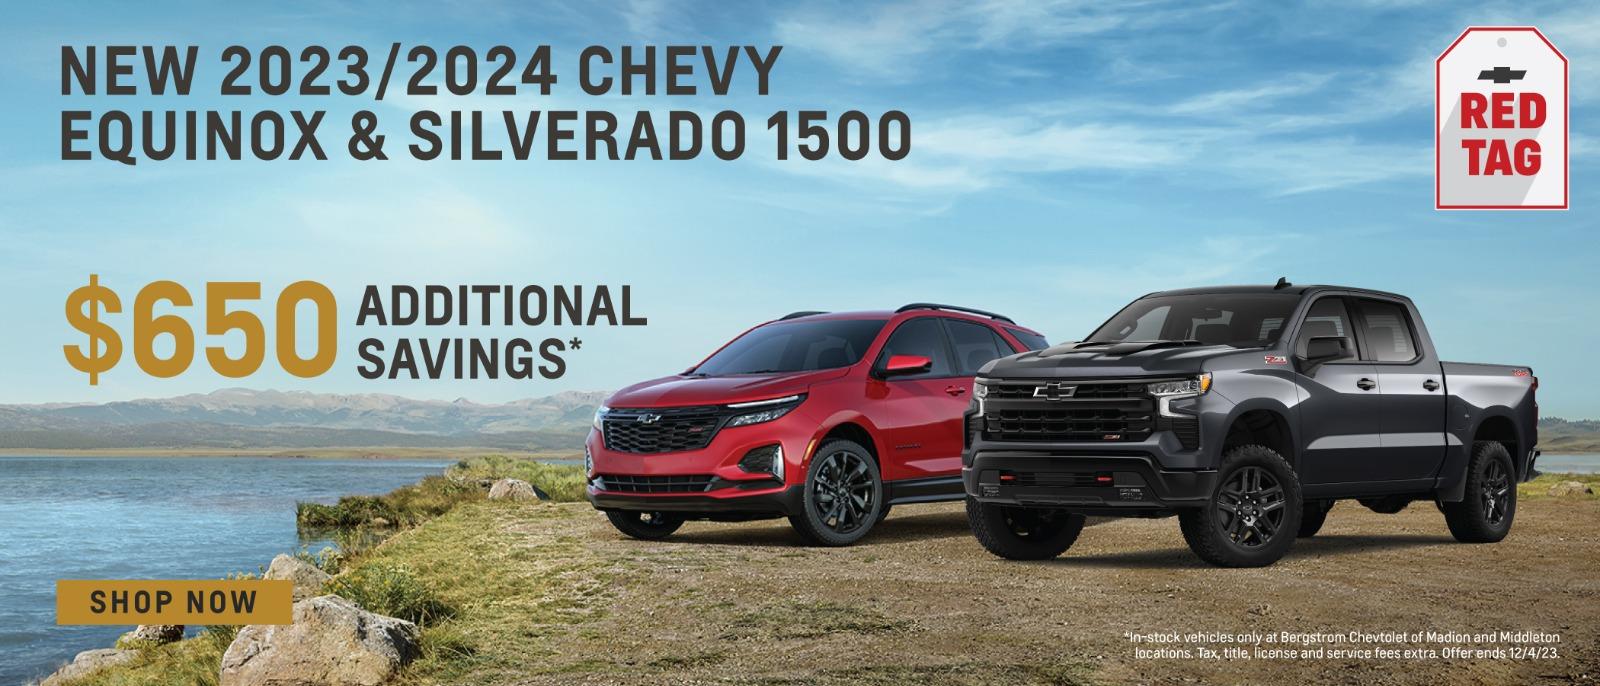 NEW 2023/2024  Chevy Equinox & Silverado1500 $650 additional savings